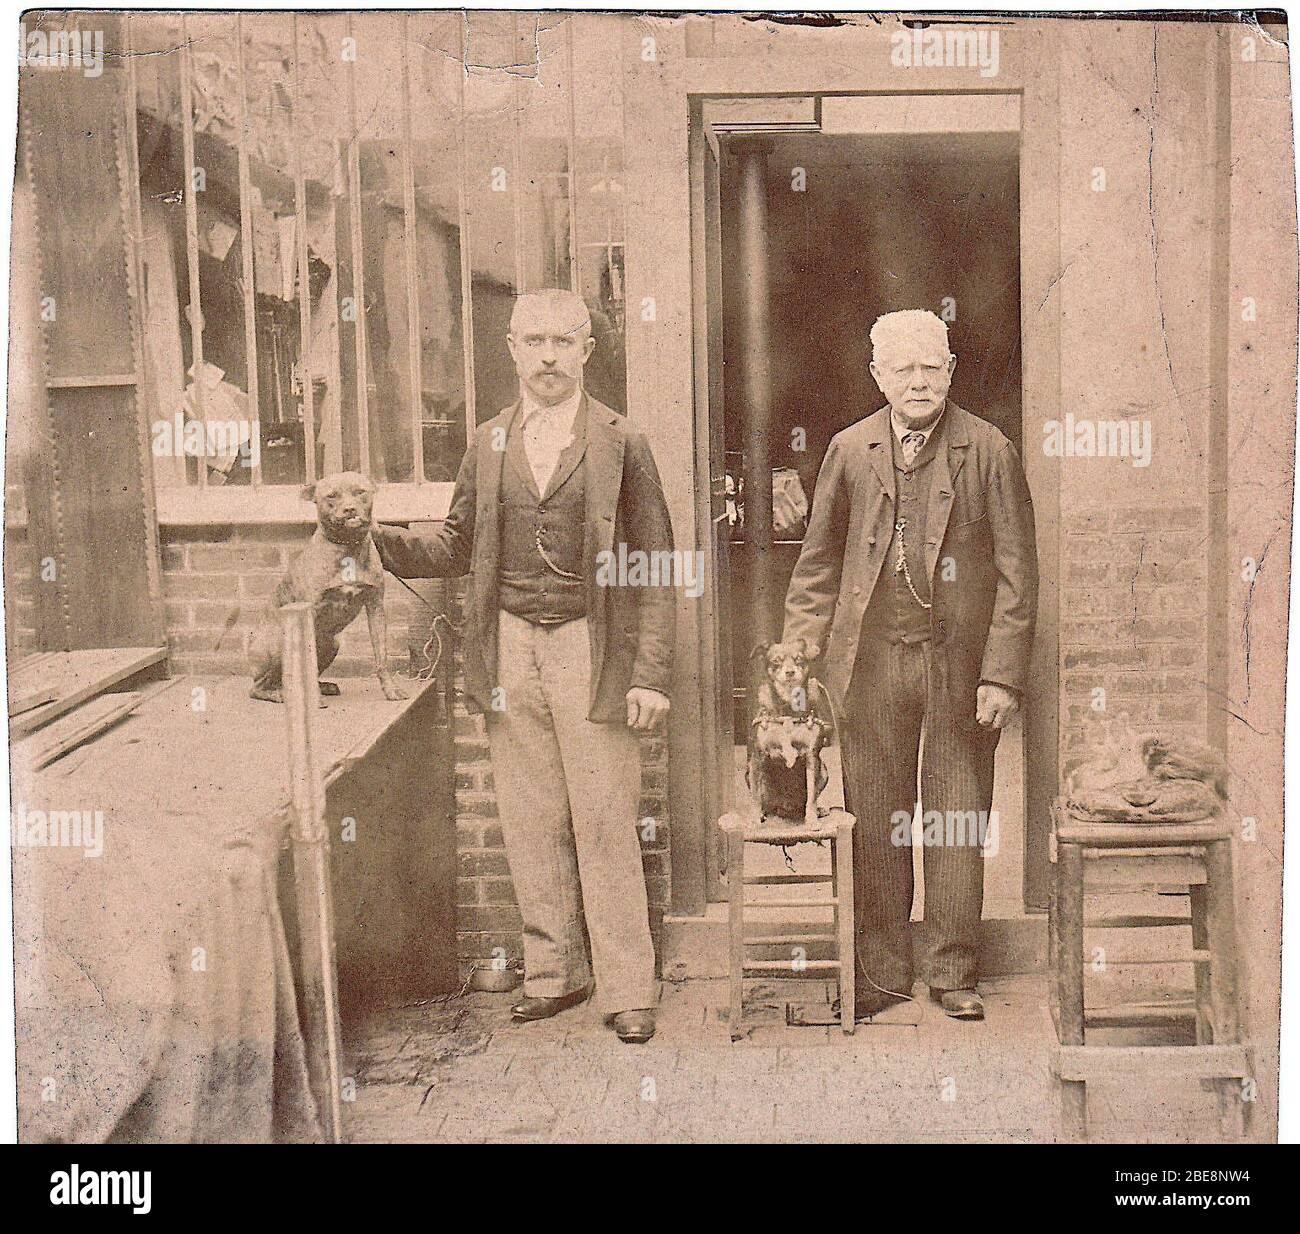 'Français : 1897 - HG Gautreau  au 30 rue des Amandiers; 1897; Self-scanned Photographie de mes aïeux devant leur atelier rue des Amandiers; Unknown author; ' Stock Photo